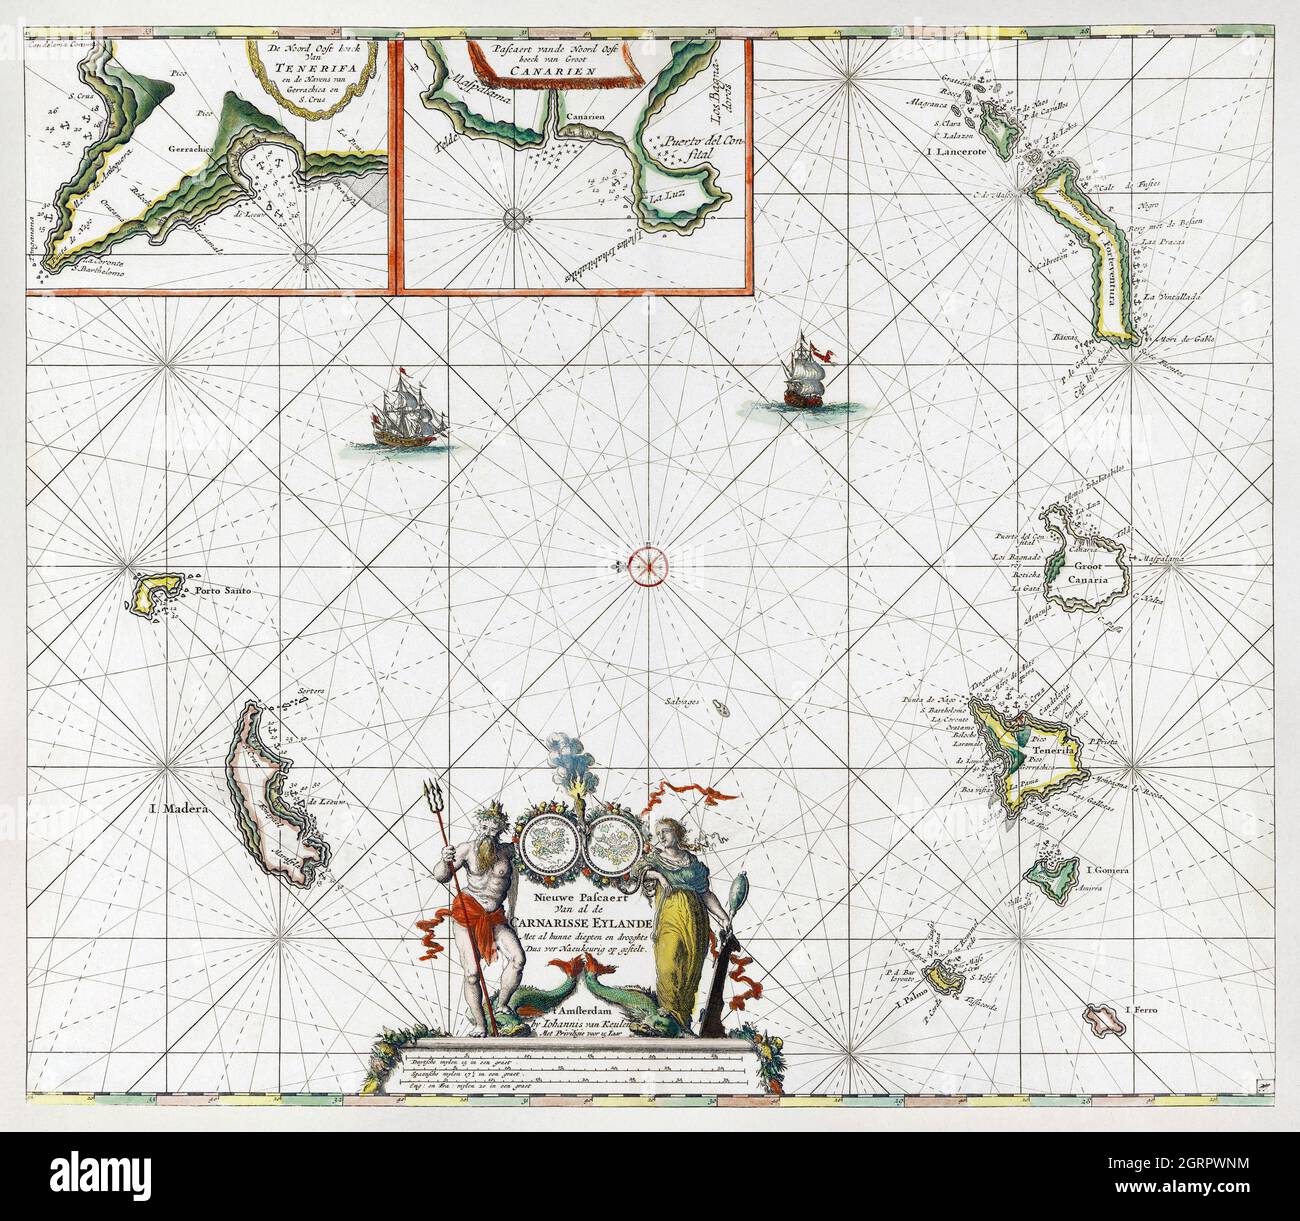 Paskaart van de Canarische Eilanden (ca. 1680) by Jan Luyken. Map of Canary Islands. Stock Photo